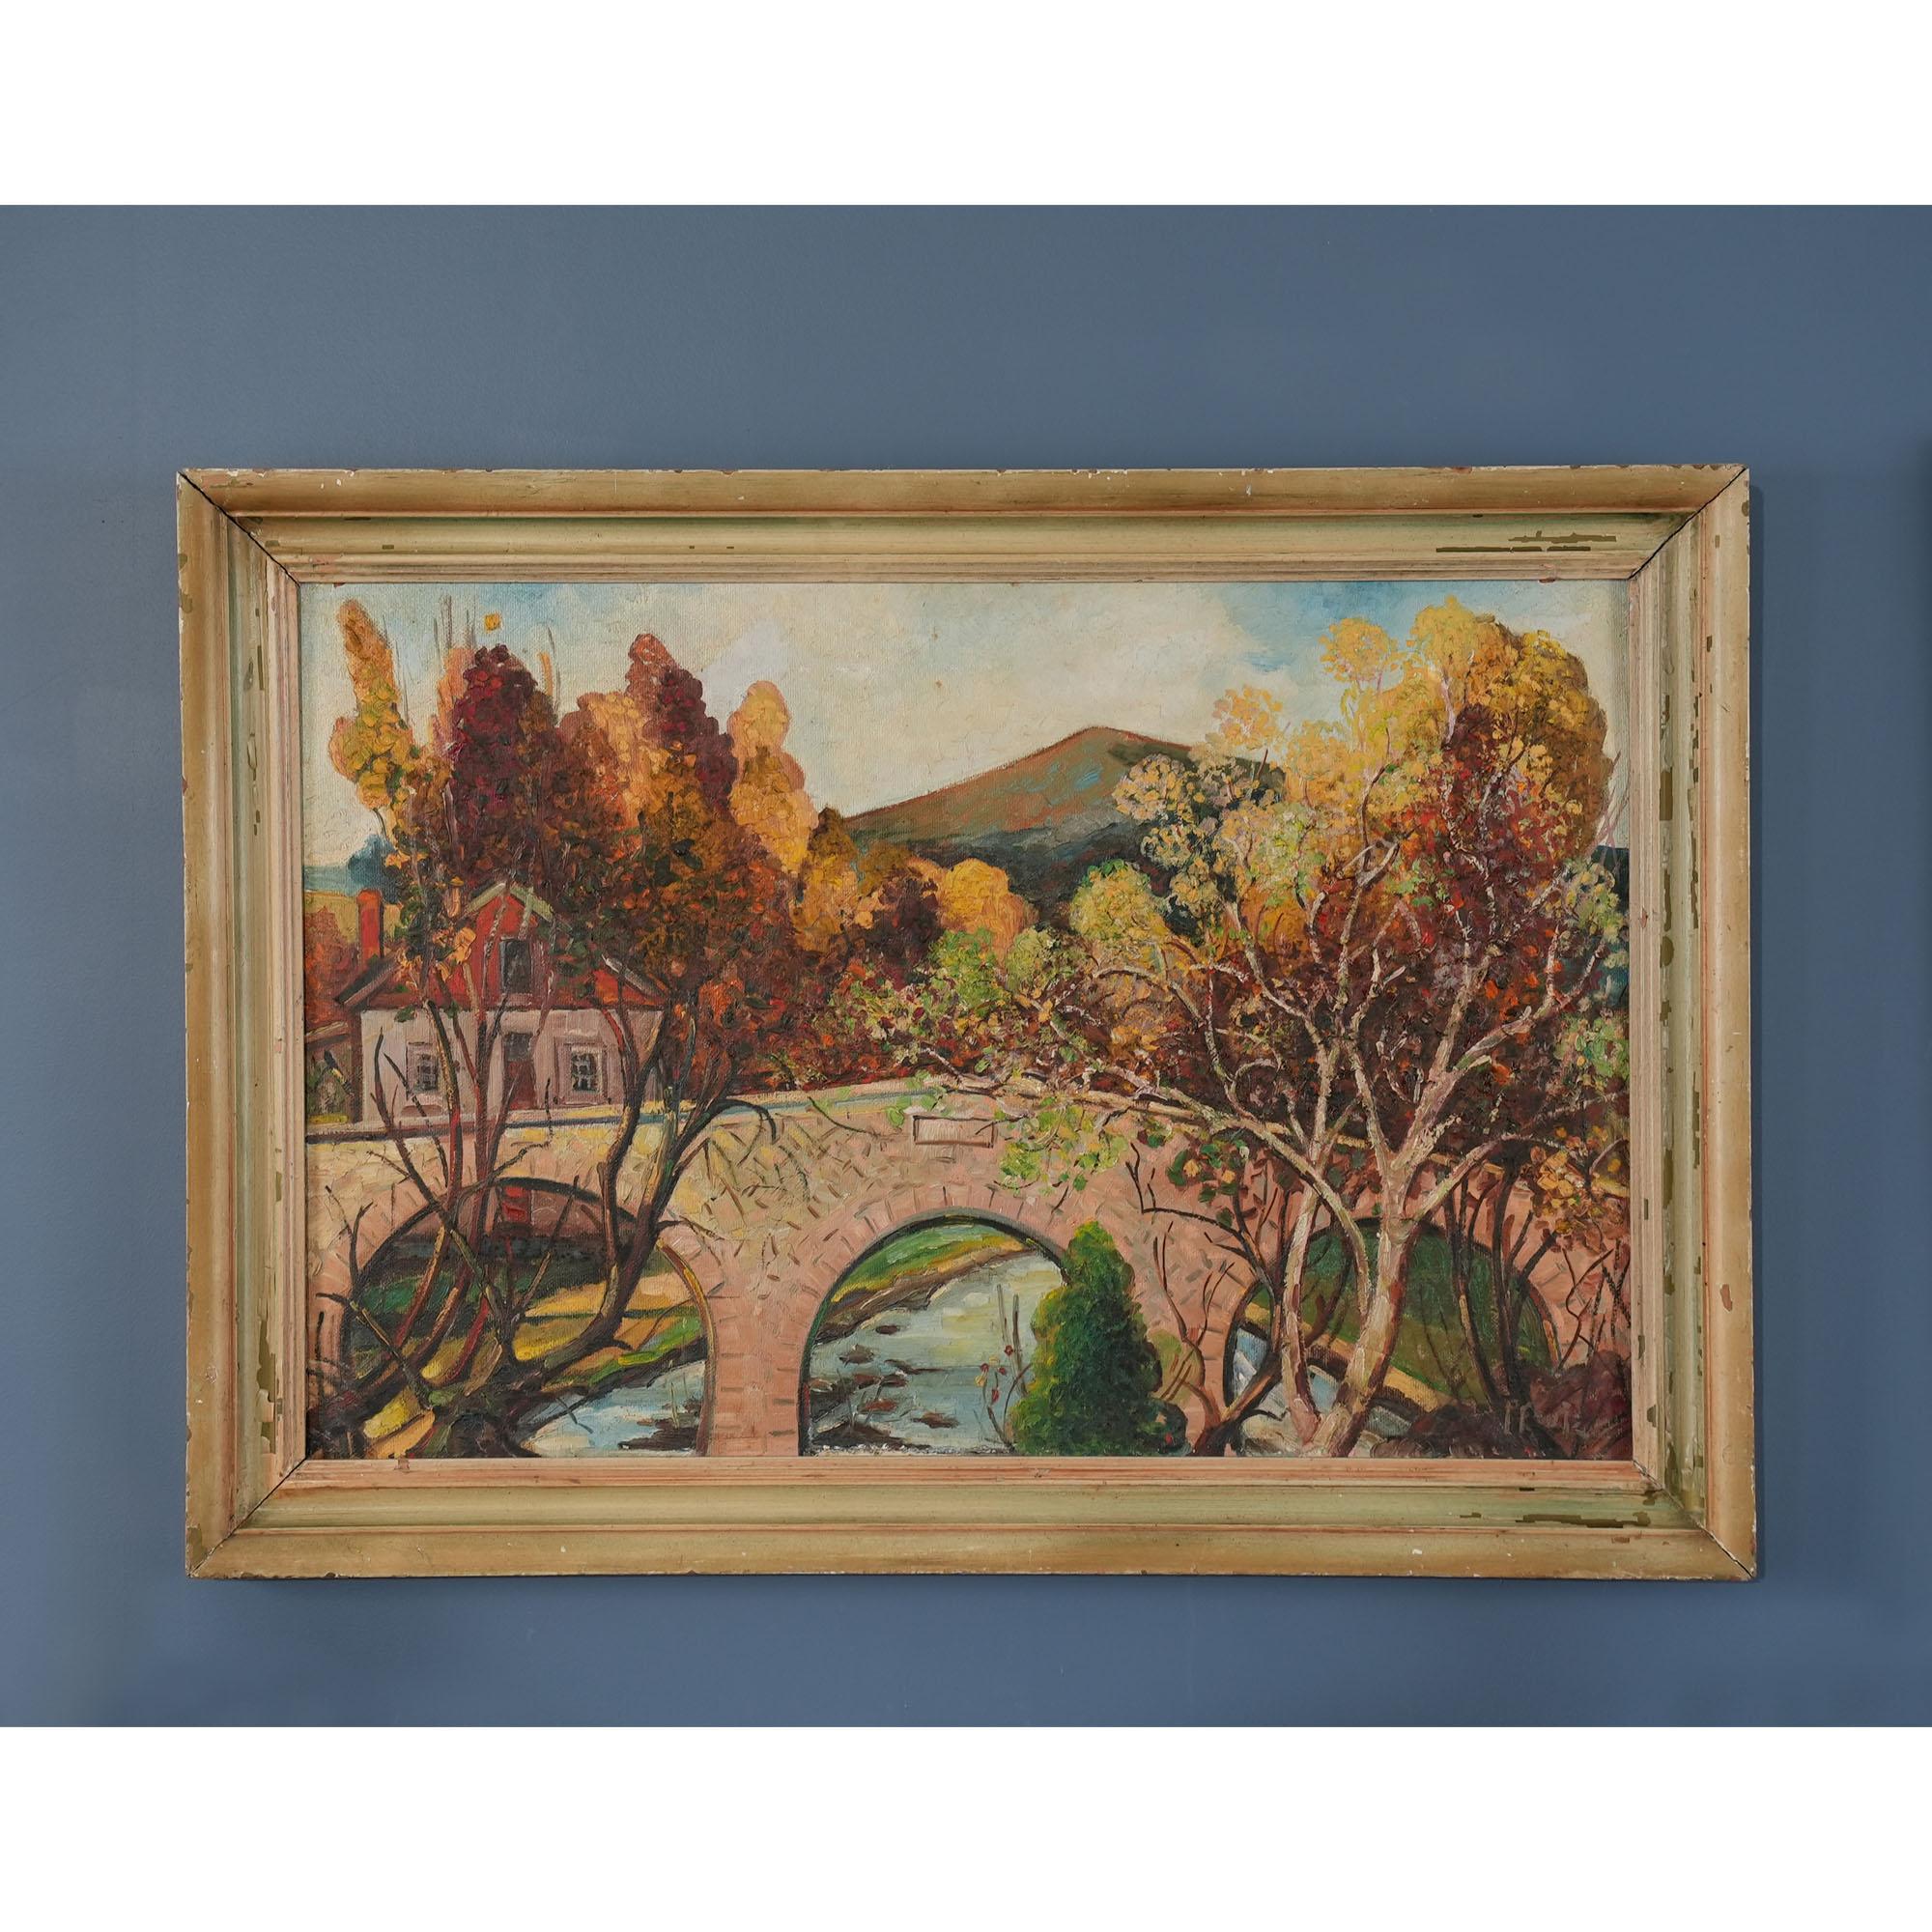 Une peinture à l'huile originale du pont de Lancaster, très intéressante et inhabituelle, réalisée par l'artiste J. Earle Pfoutz. La peinture est réalisée sur carton d'artiste et est accompagnée de ce qui semble être un cadre original décoré/peint